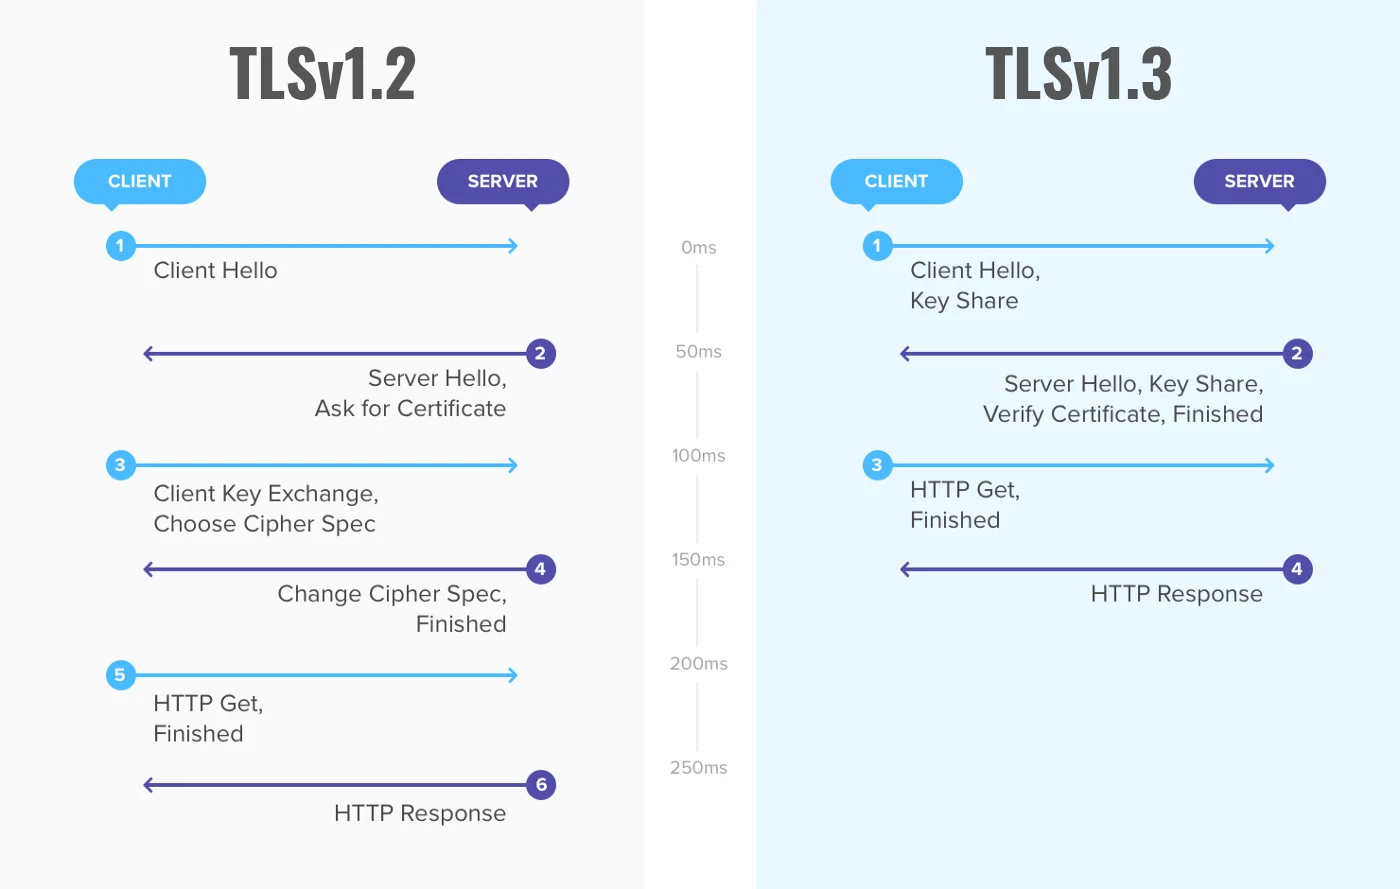 Razlike između TLSv1.2 i TLSv1.3